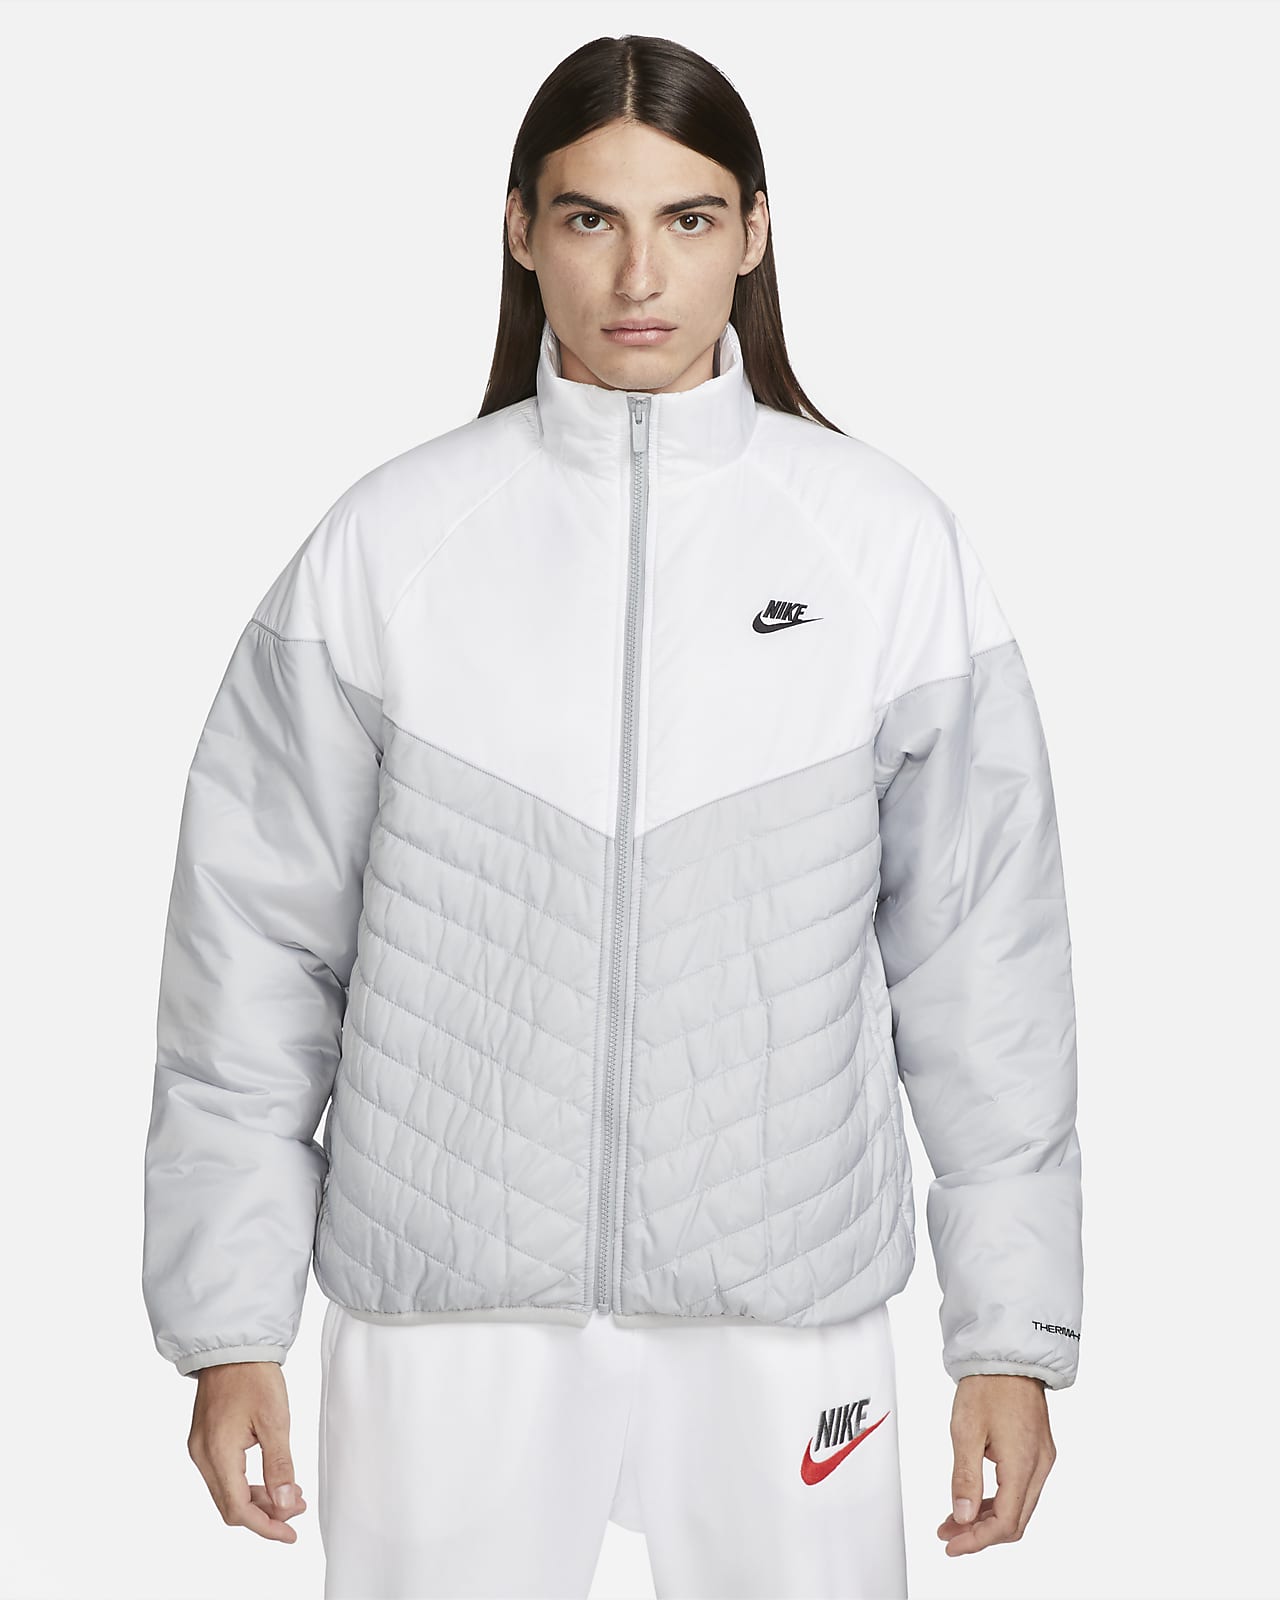 Nike | Jackets & Coats | New Youth Boys Nike Full Zip Up Polyester Jacket |  Poshmark